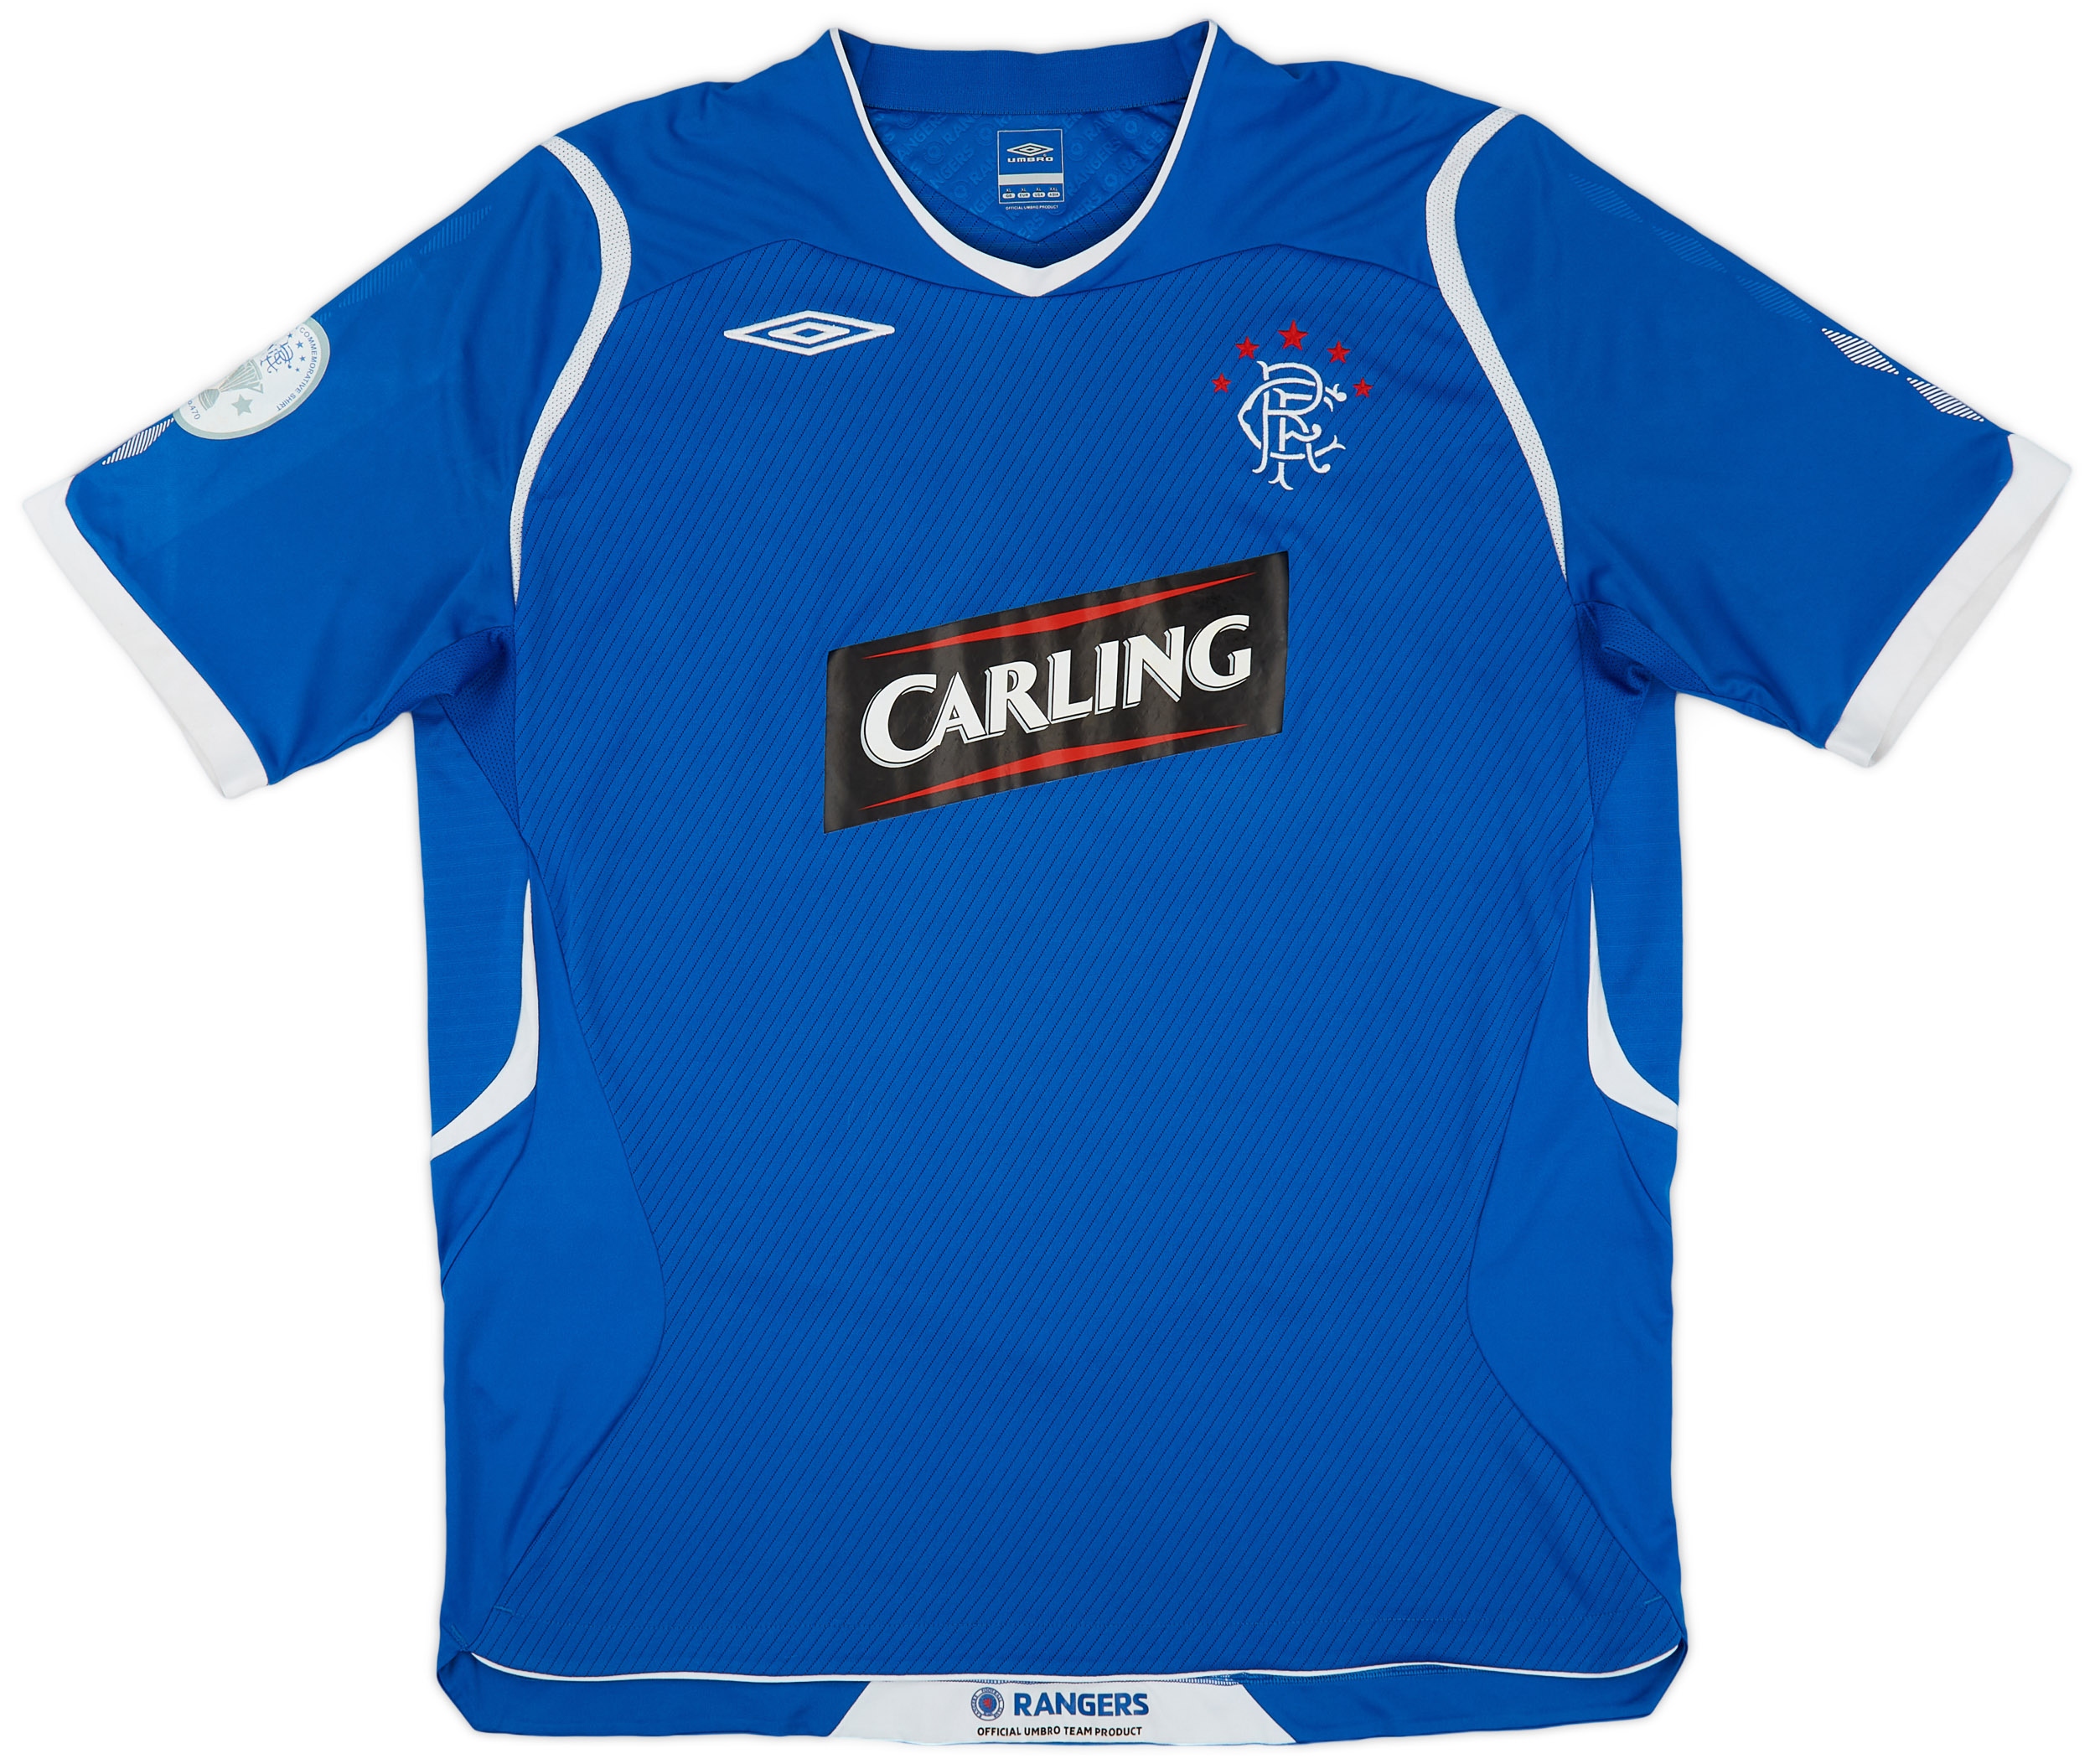 2008-09 Rangers Home Shirt - 8/10 - ()